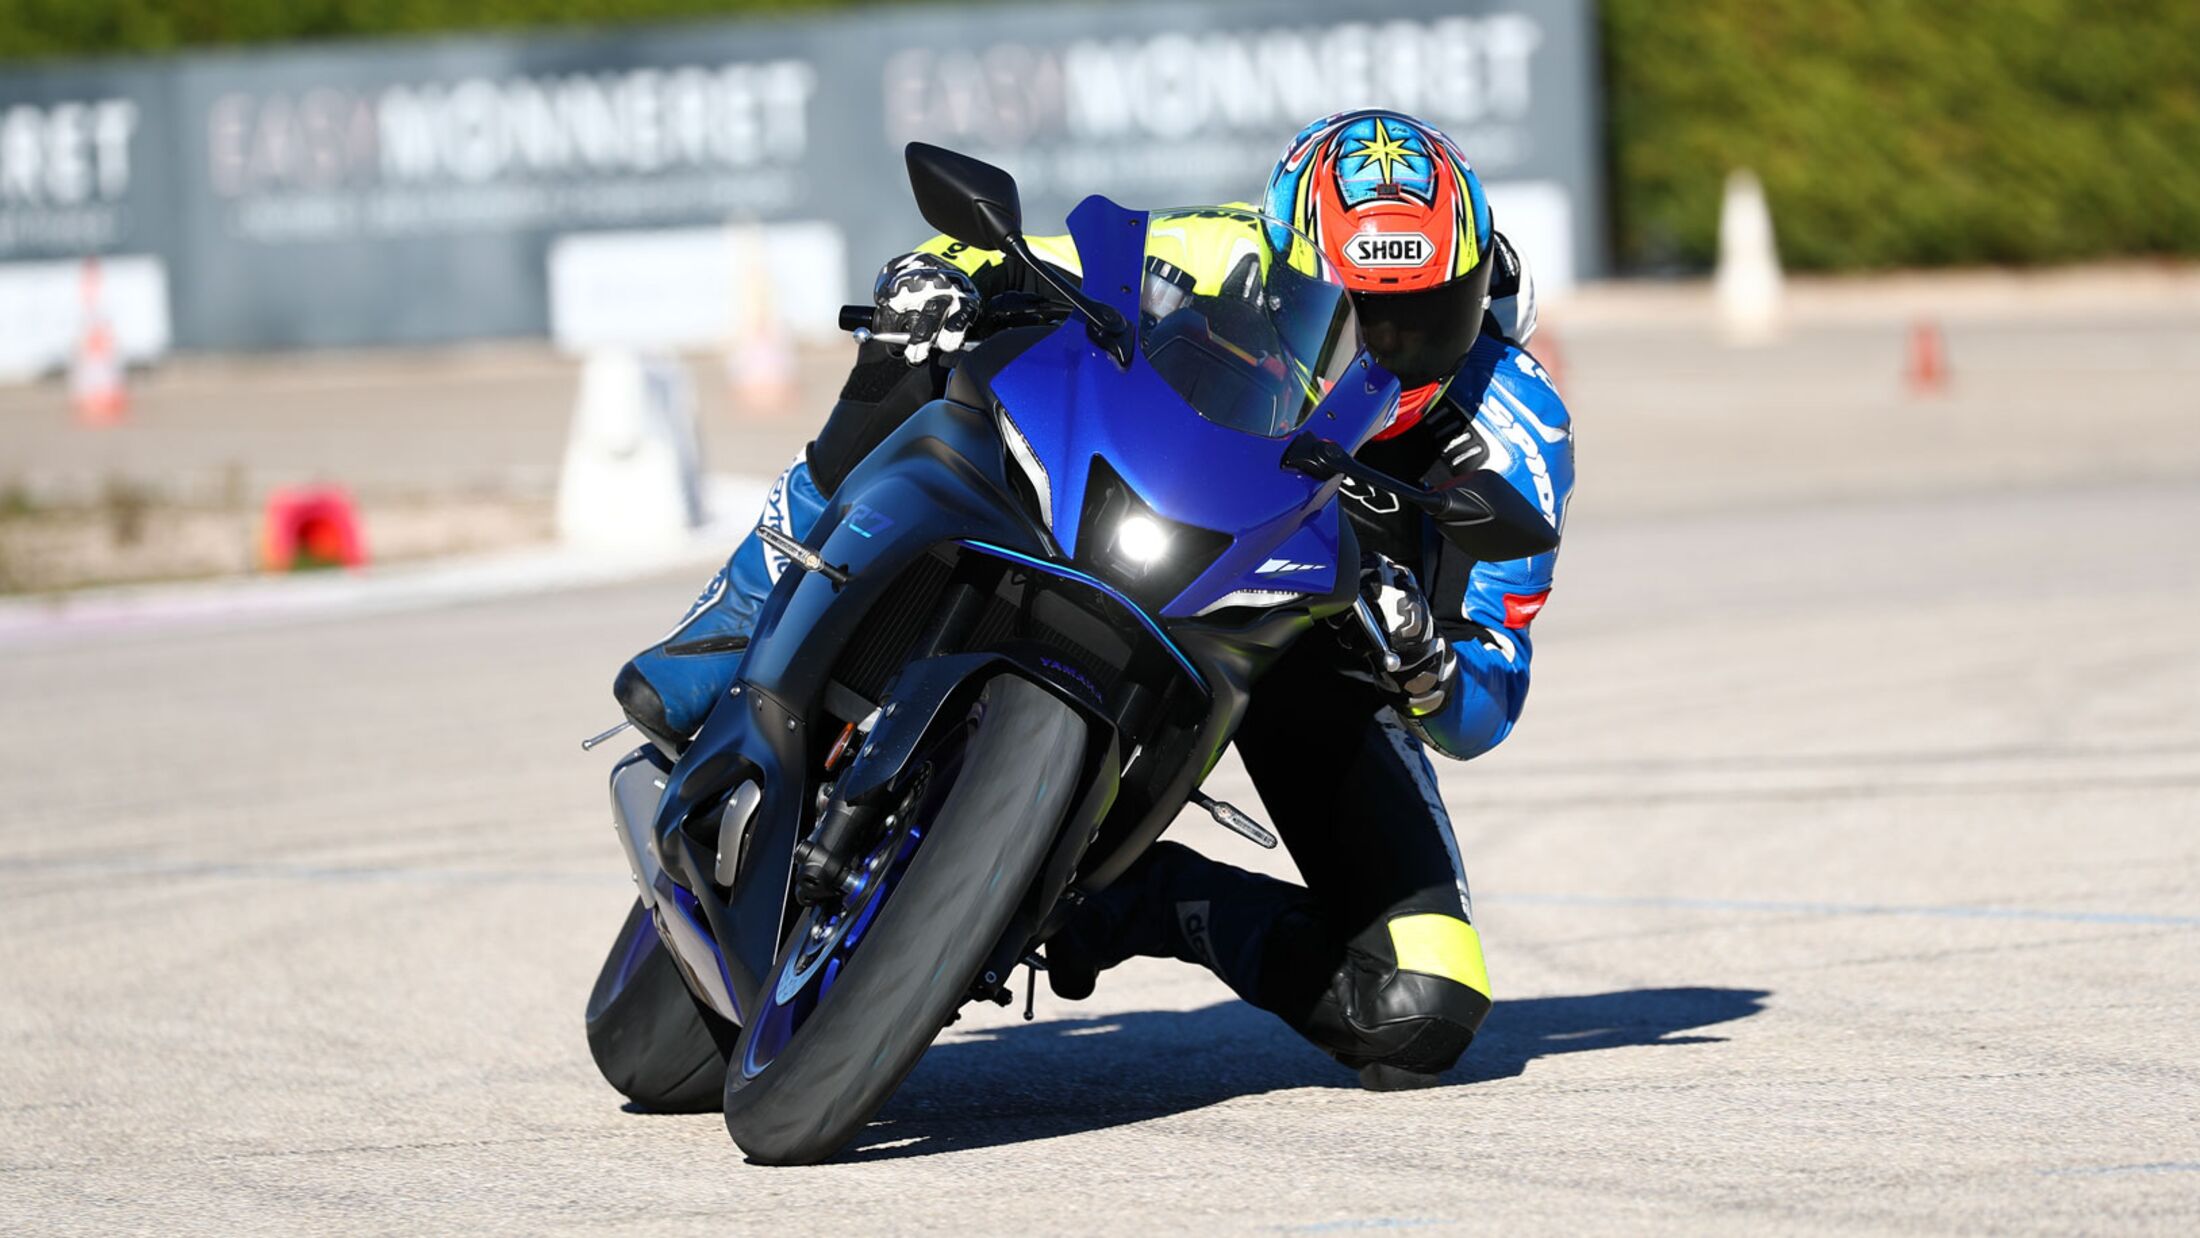 Yamaha R7 im ausführlichen Top-Test